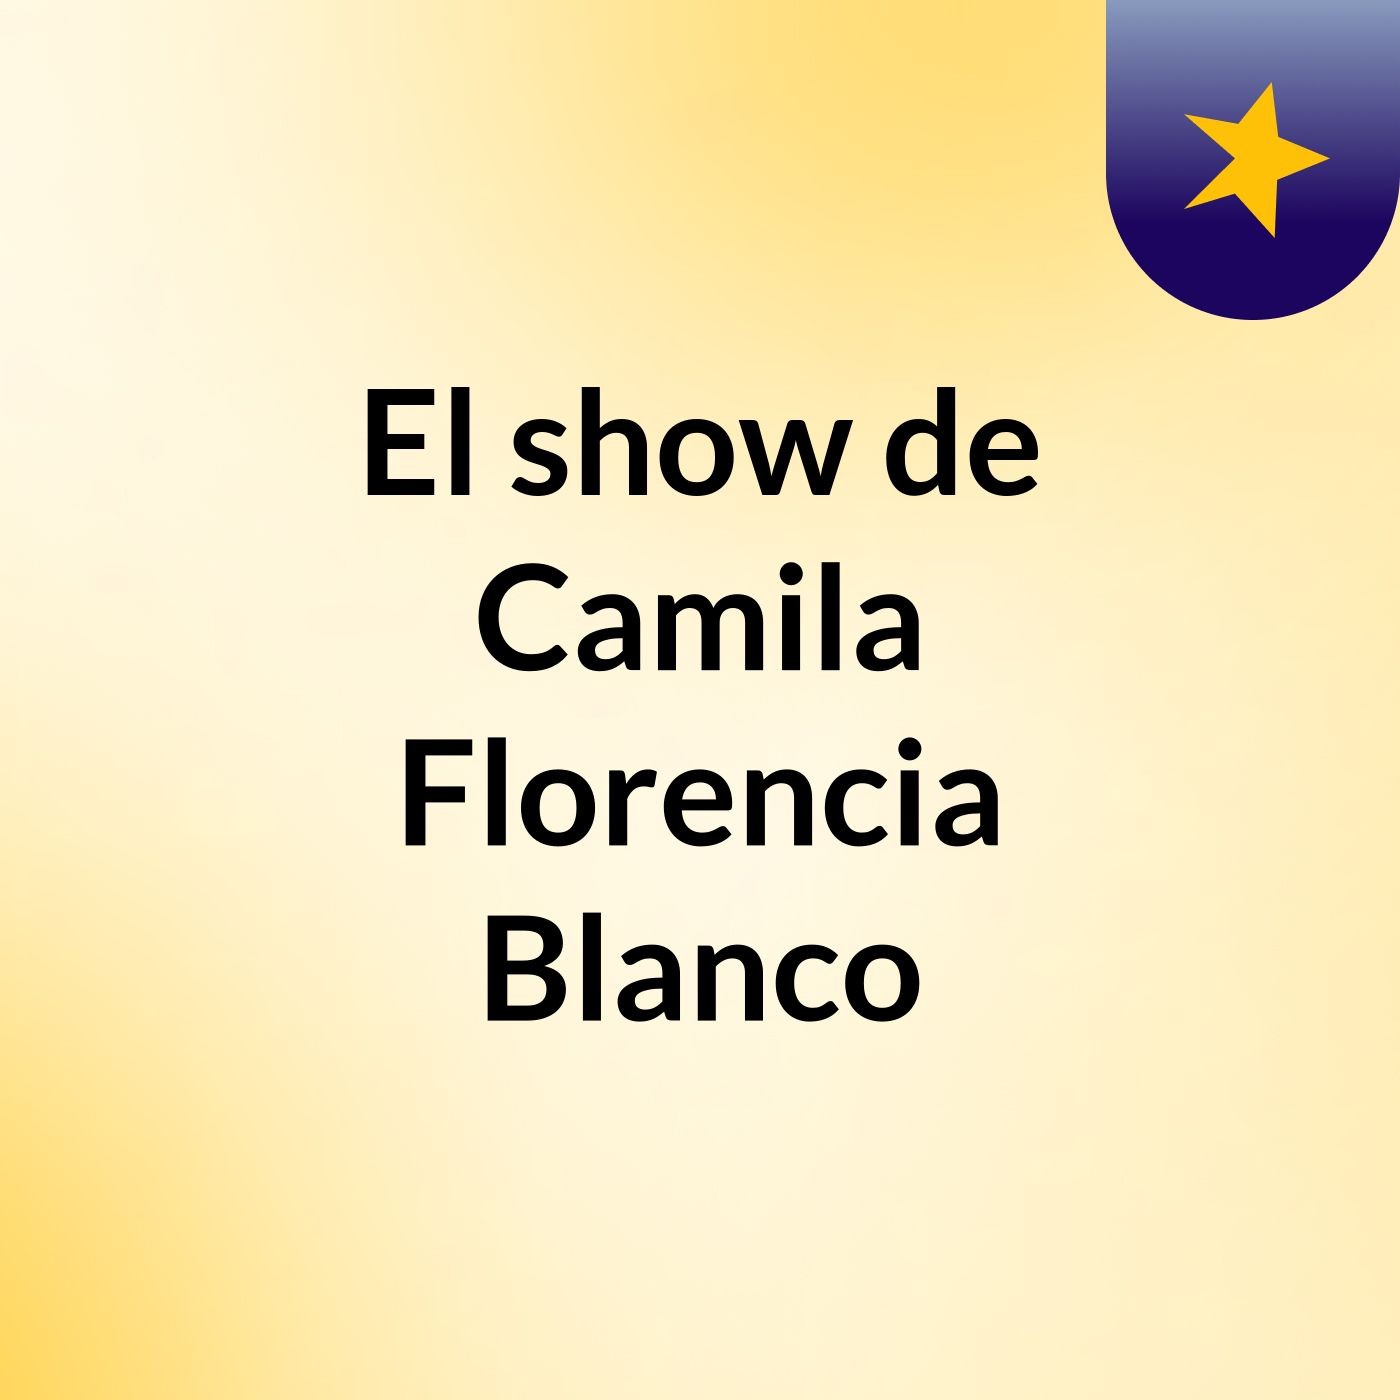 El show de Camila Florencia Blanco